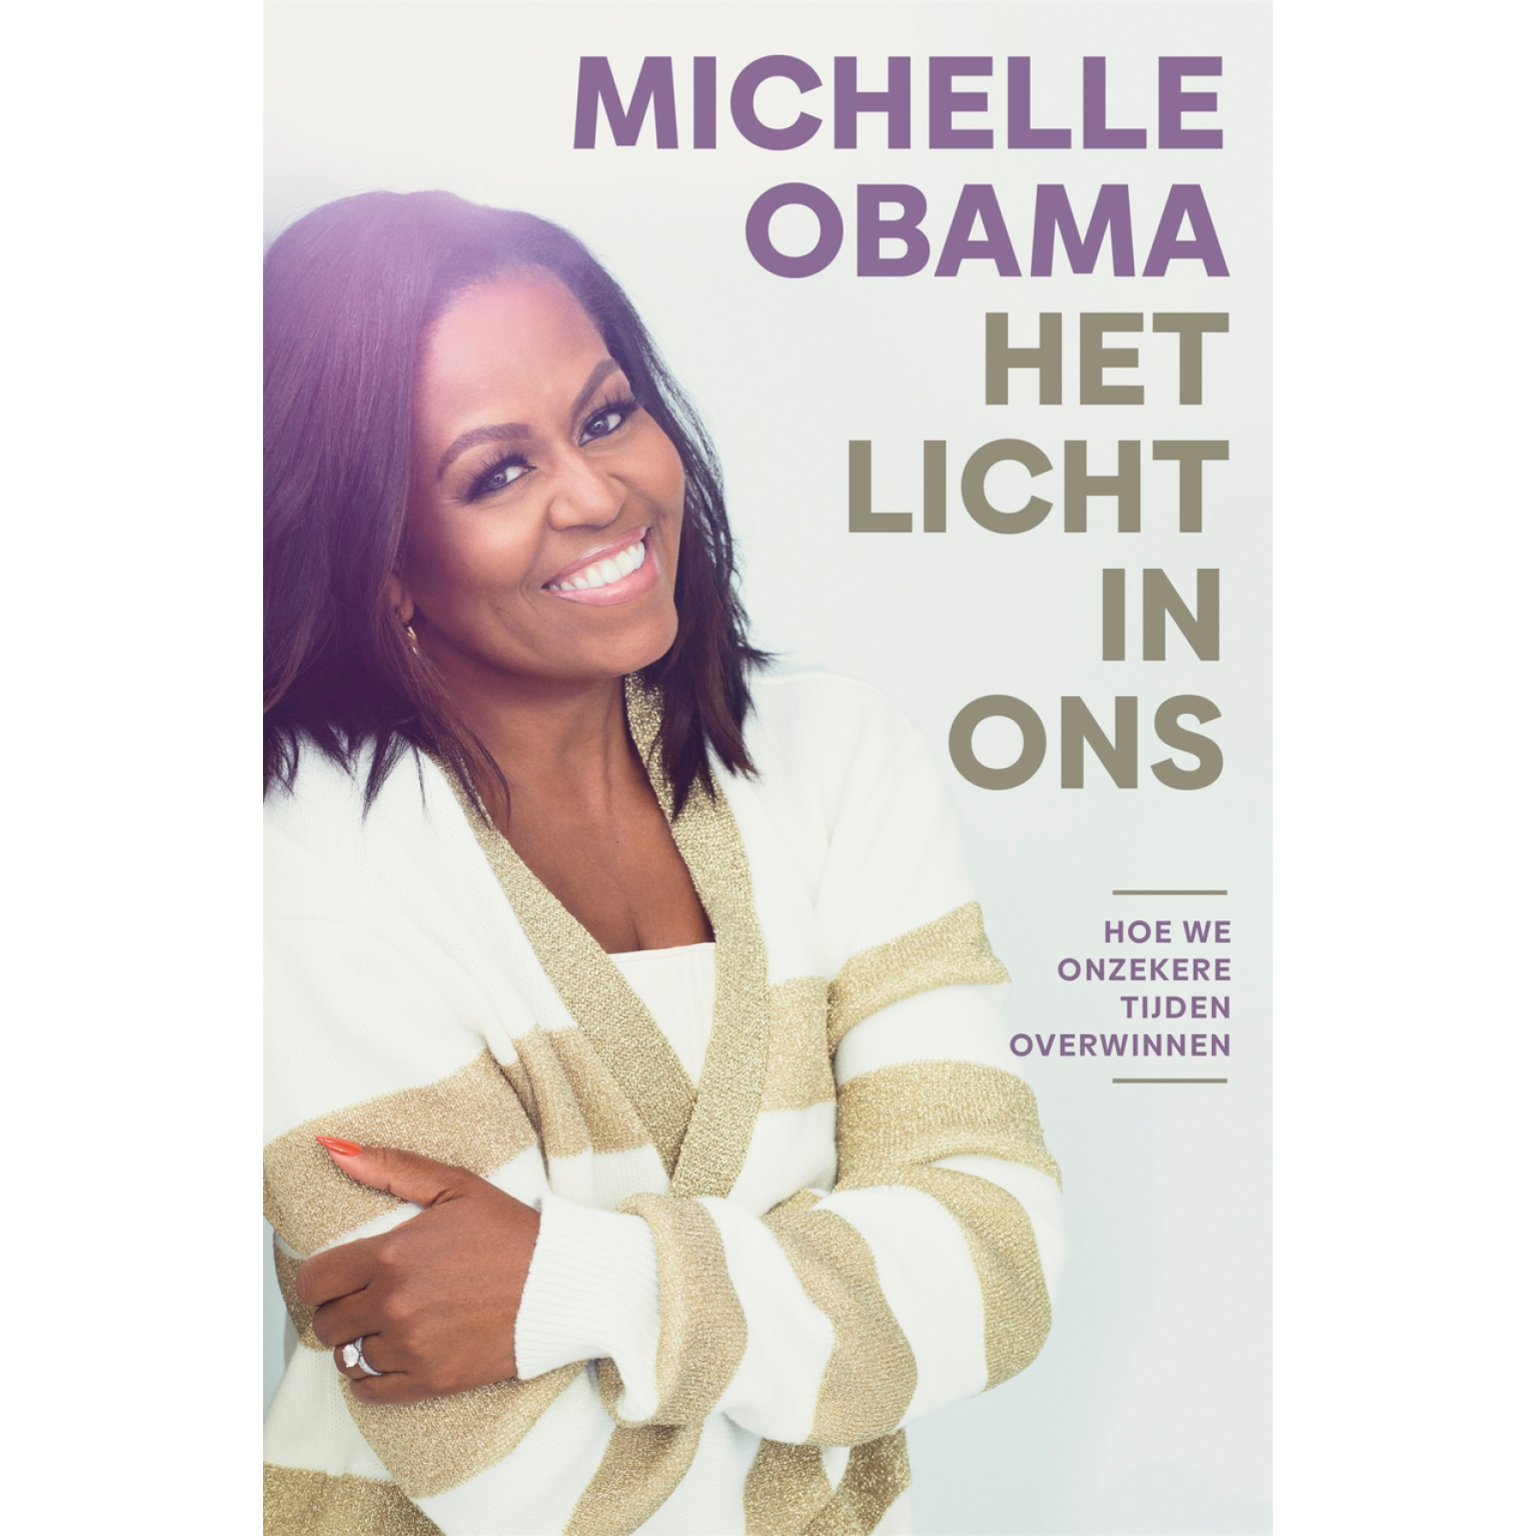 Het licht in ons - Michelle Obama